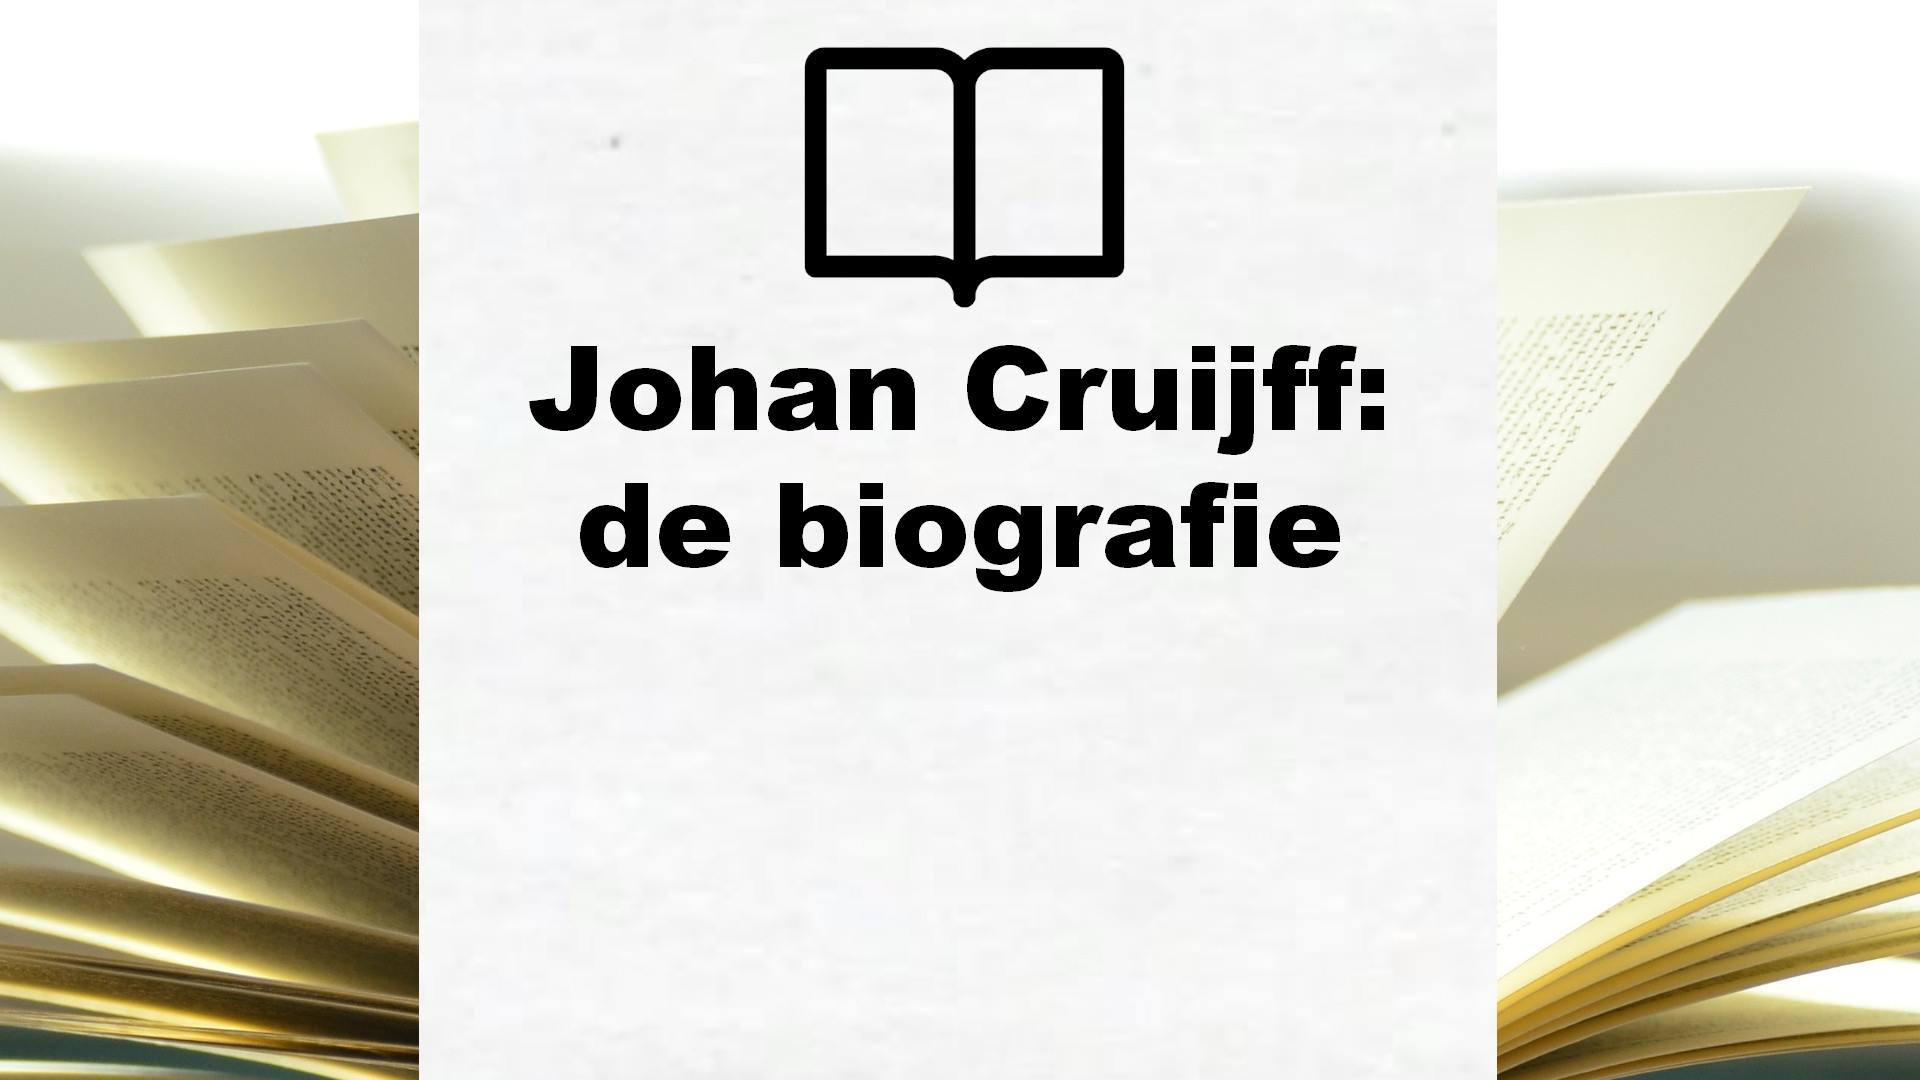 Johan Cruijff: de biografie – Boekrecensie